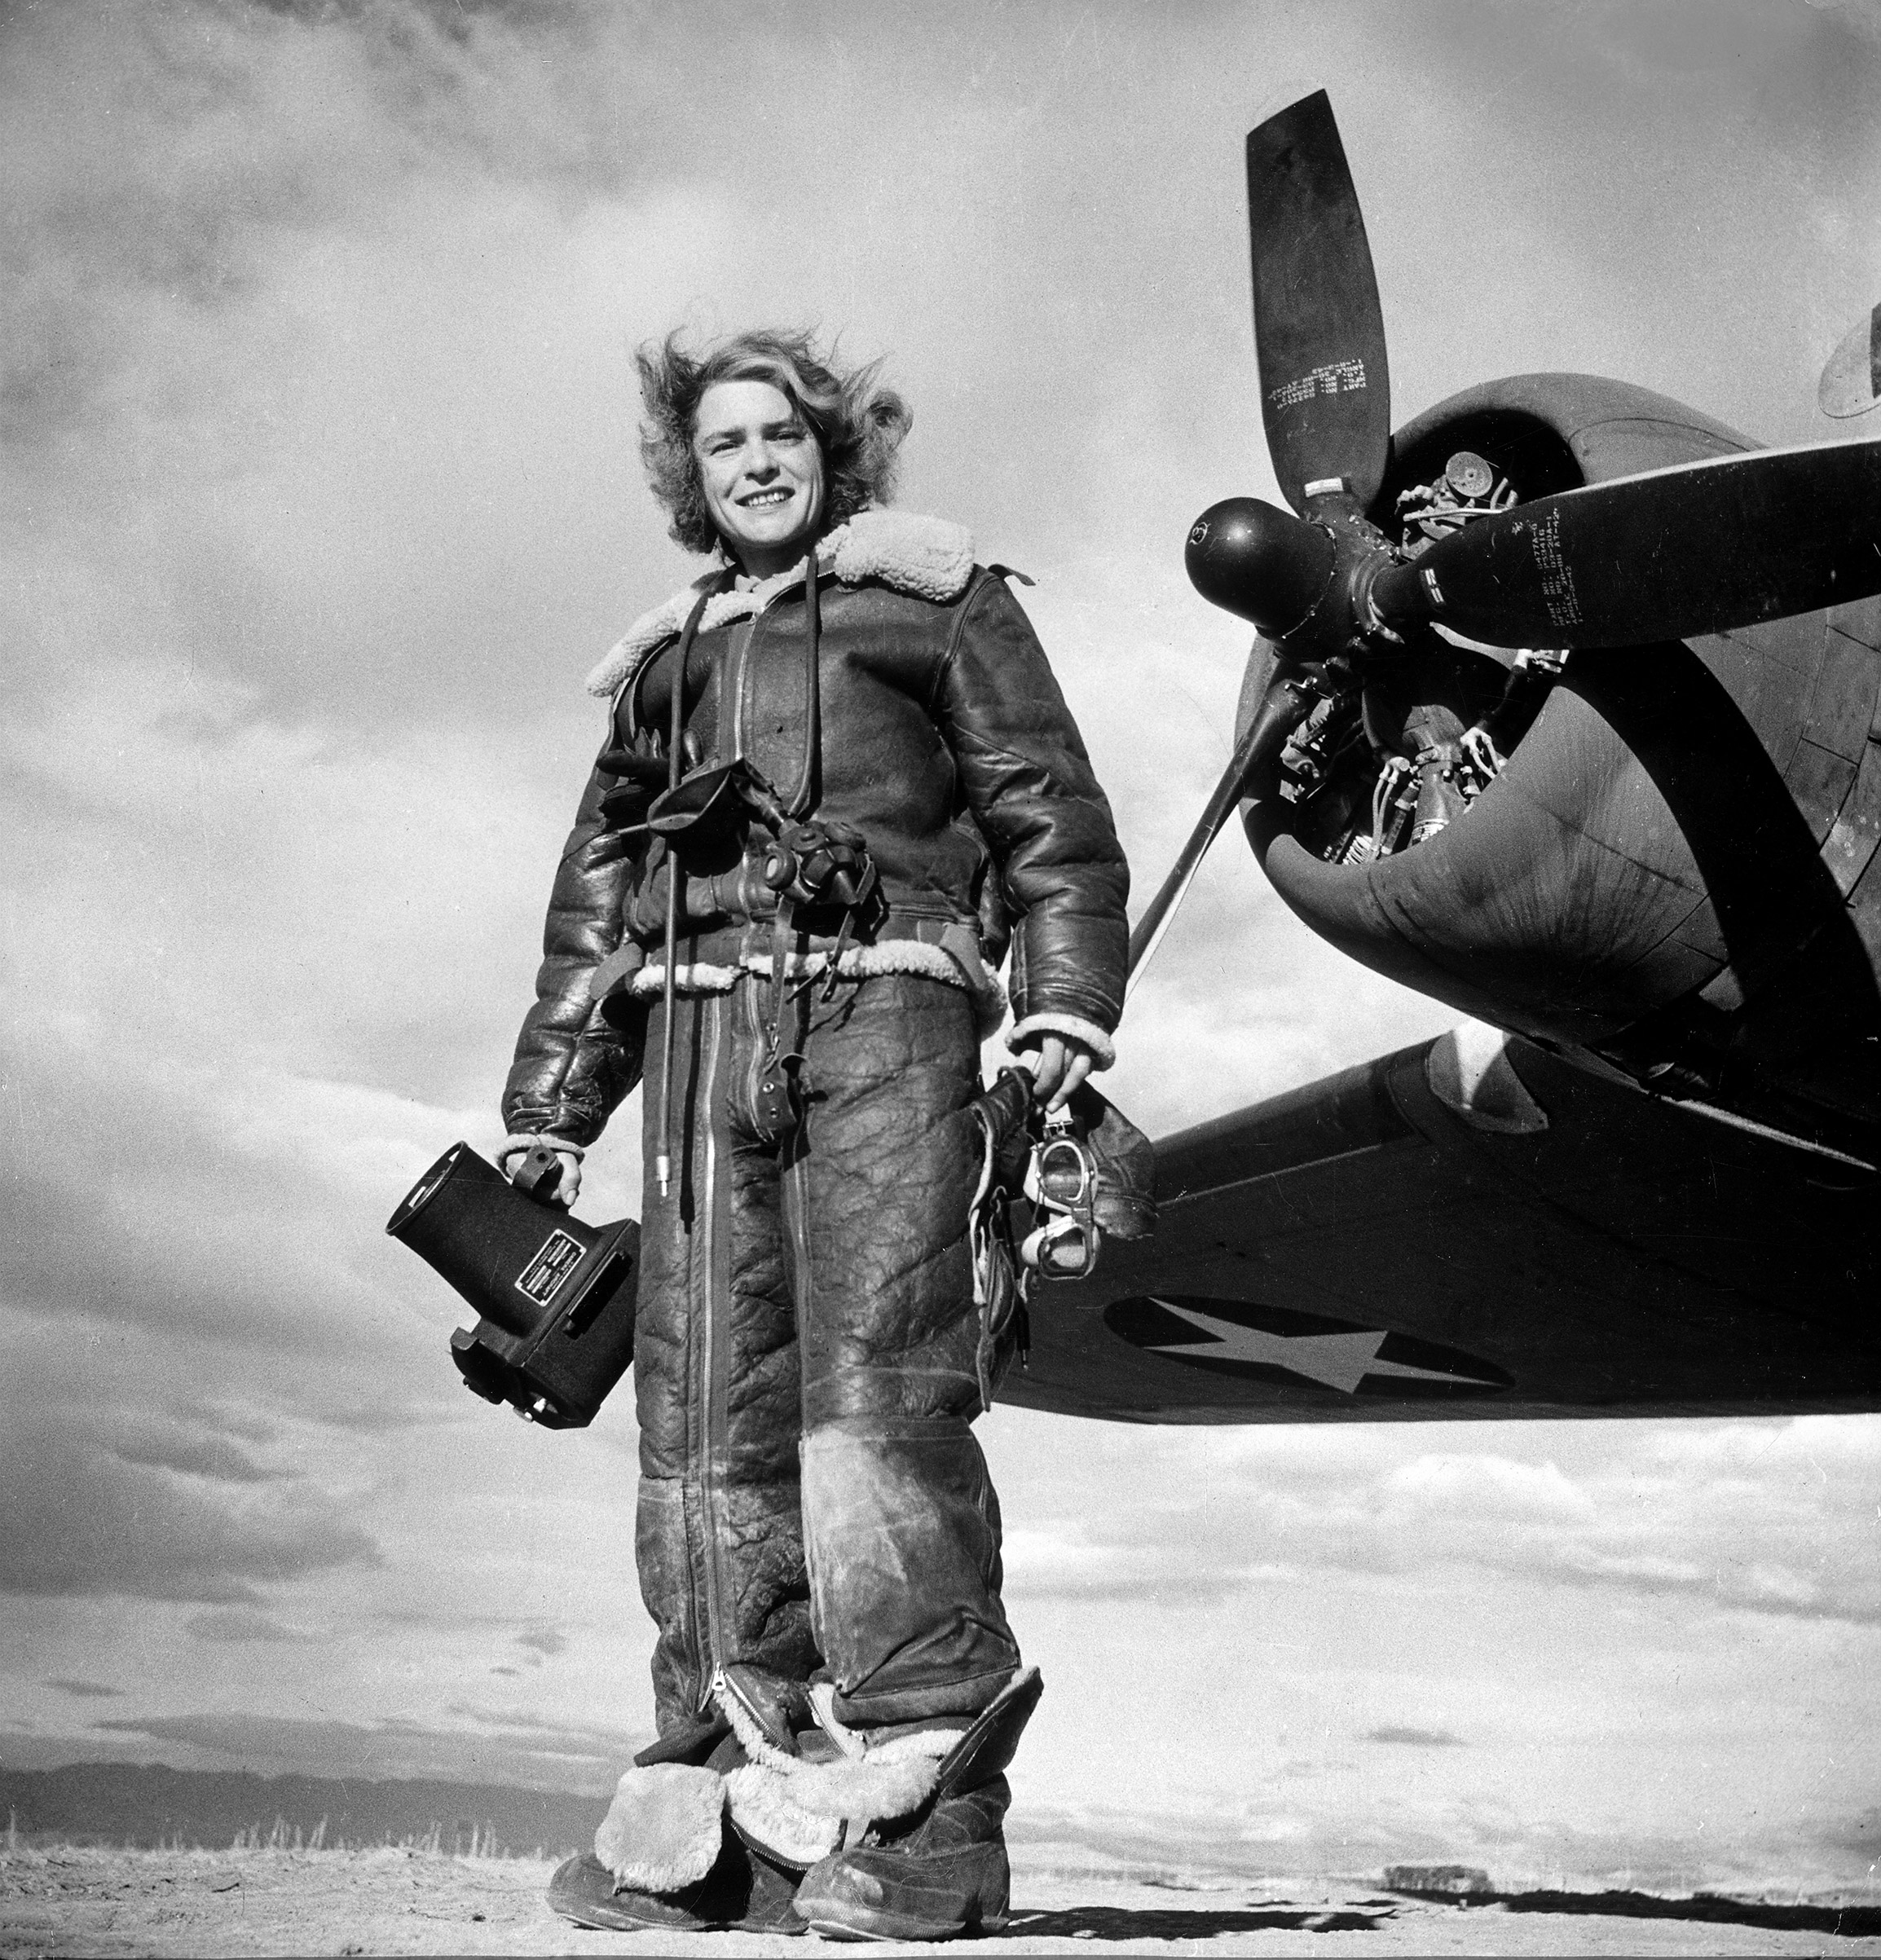 MARGARET BOURKE-WHITE: First female war correspondent, 1941.